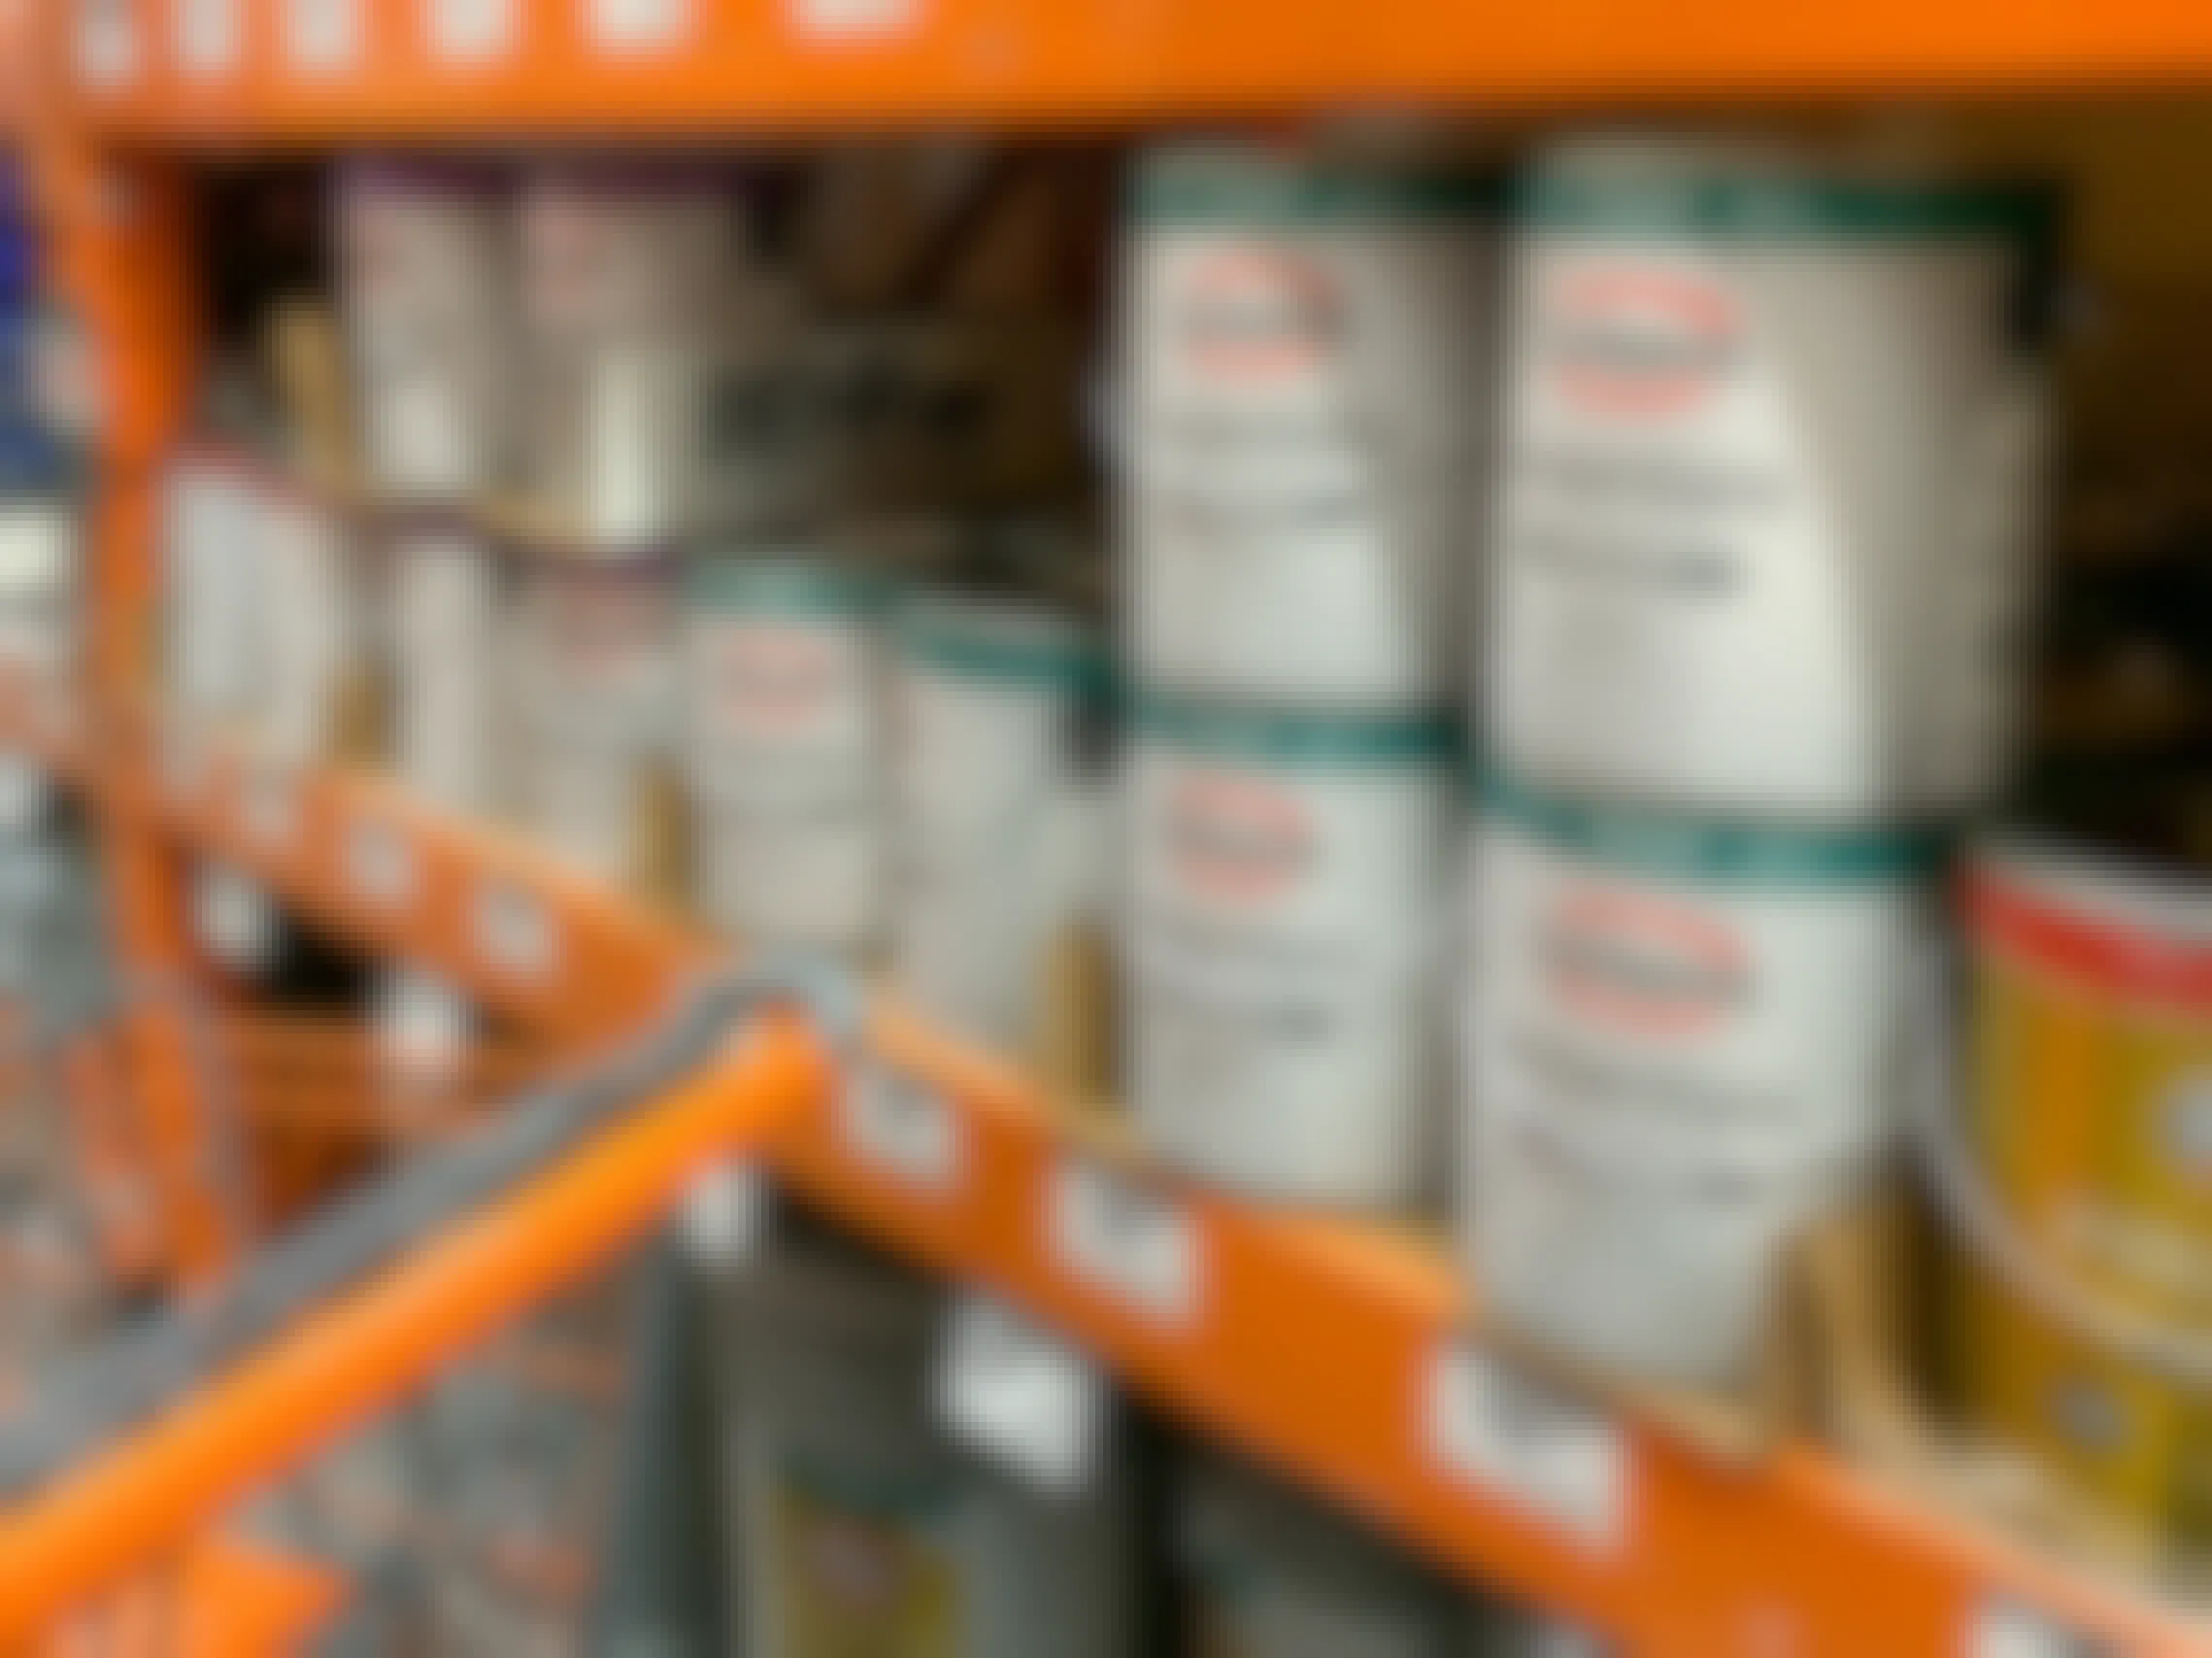 glidden essentials single gallon paint buckets in home depot